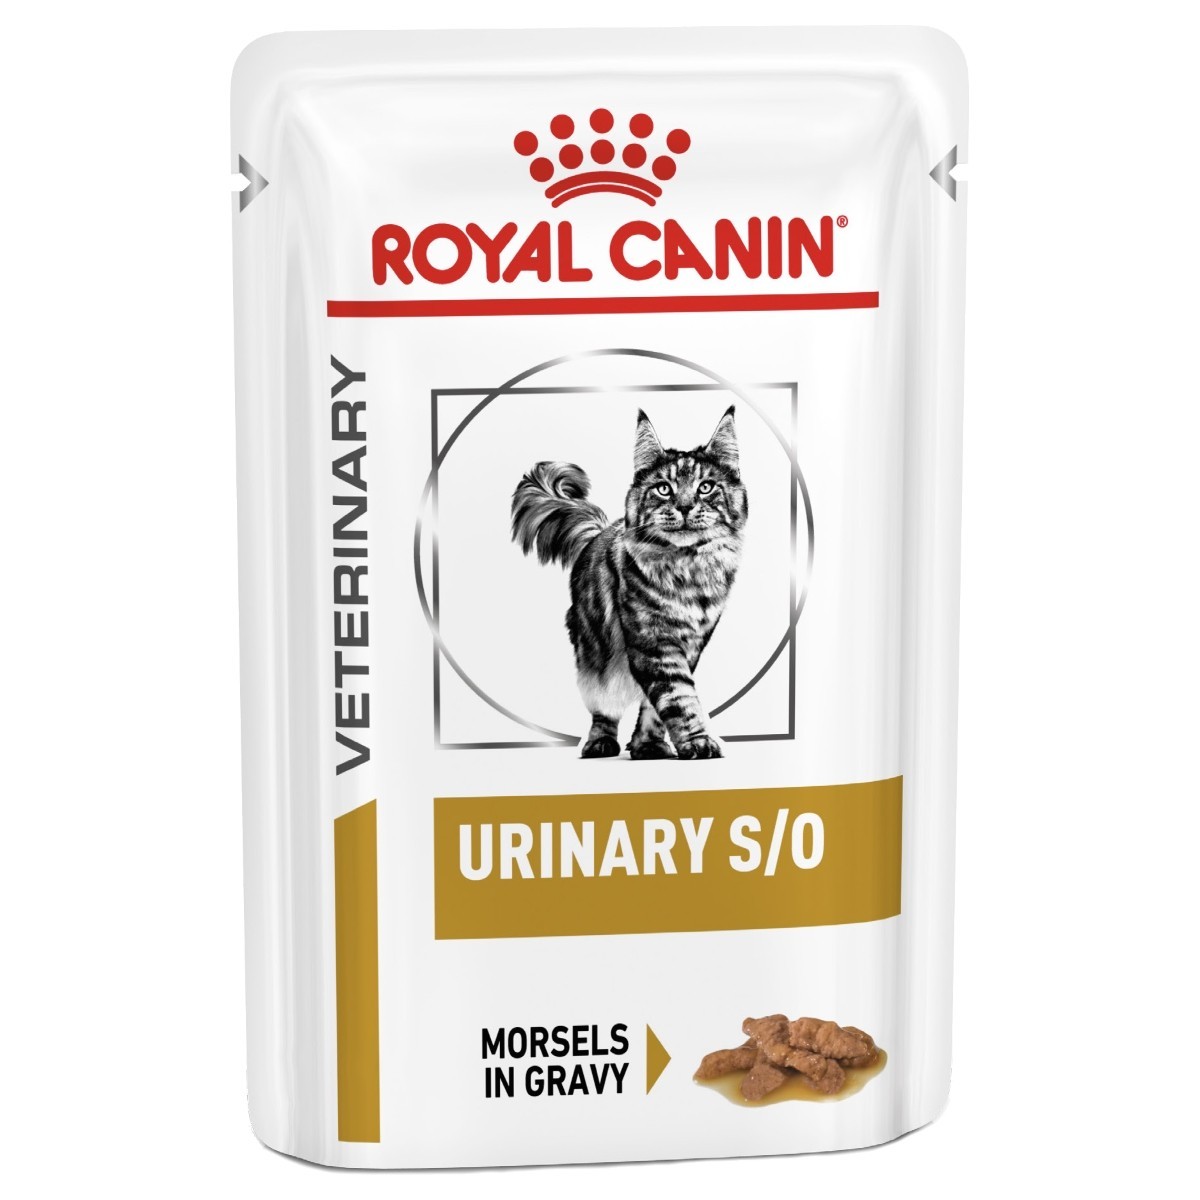 royal canin cat treats urinary